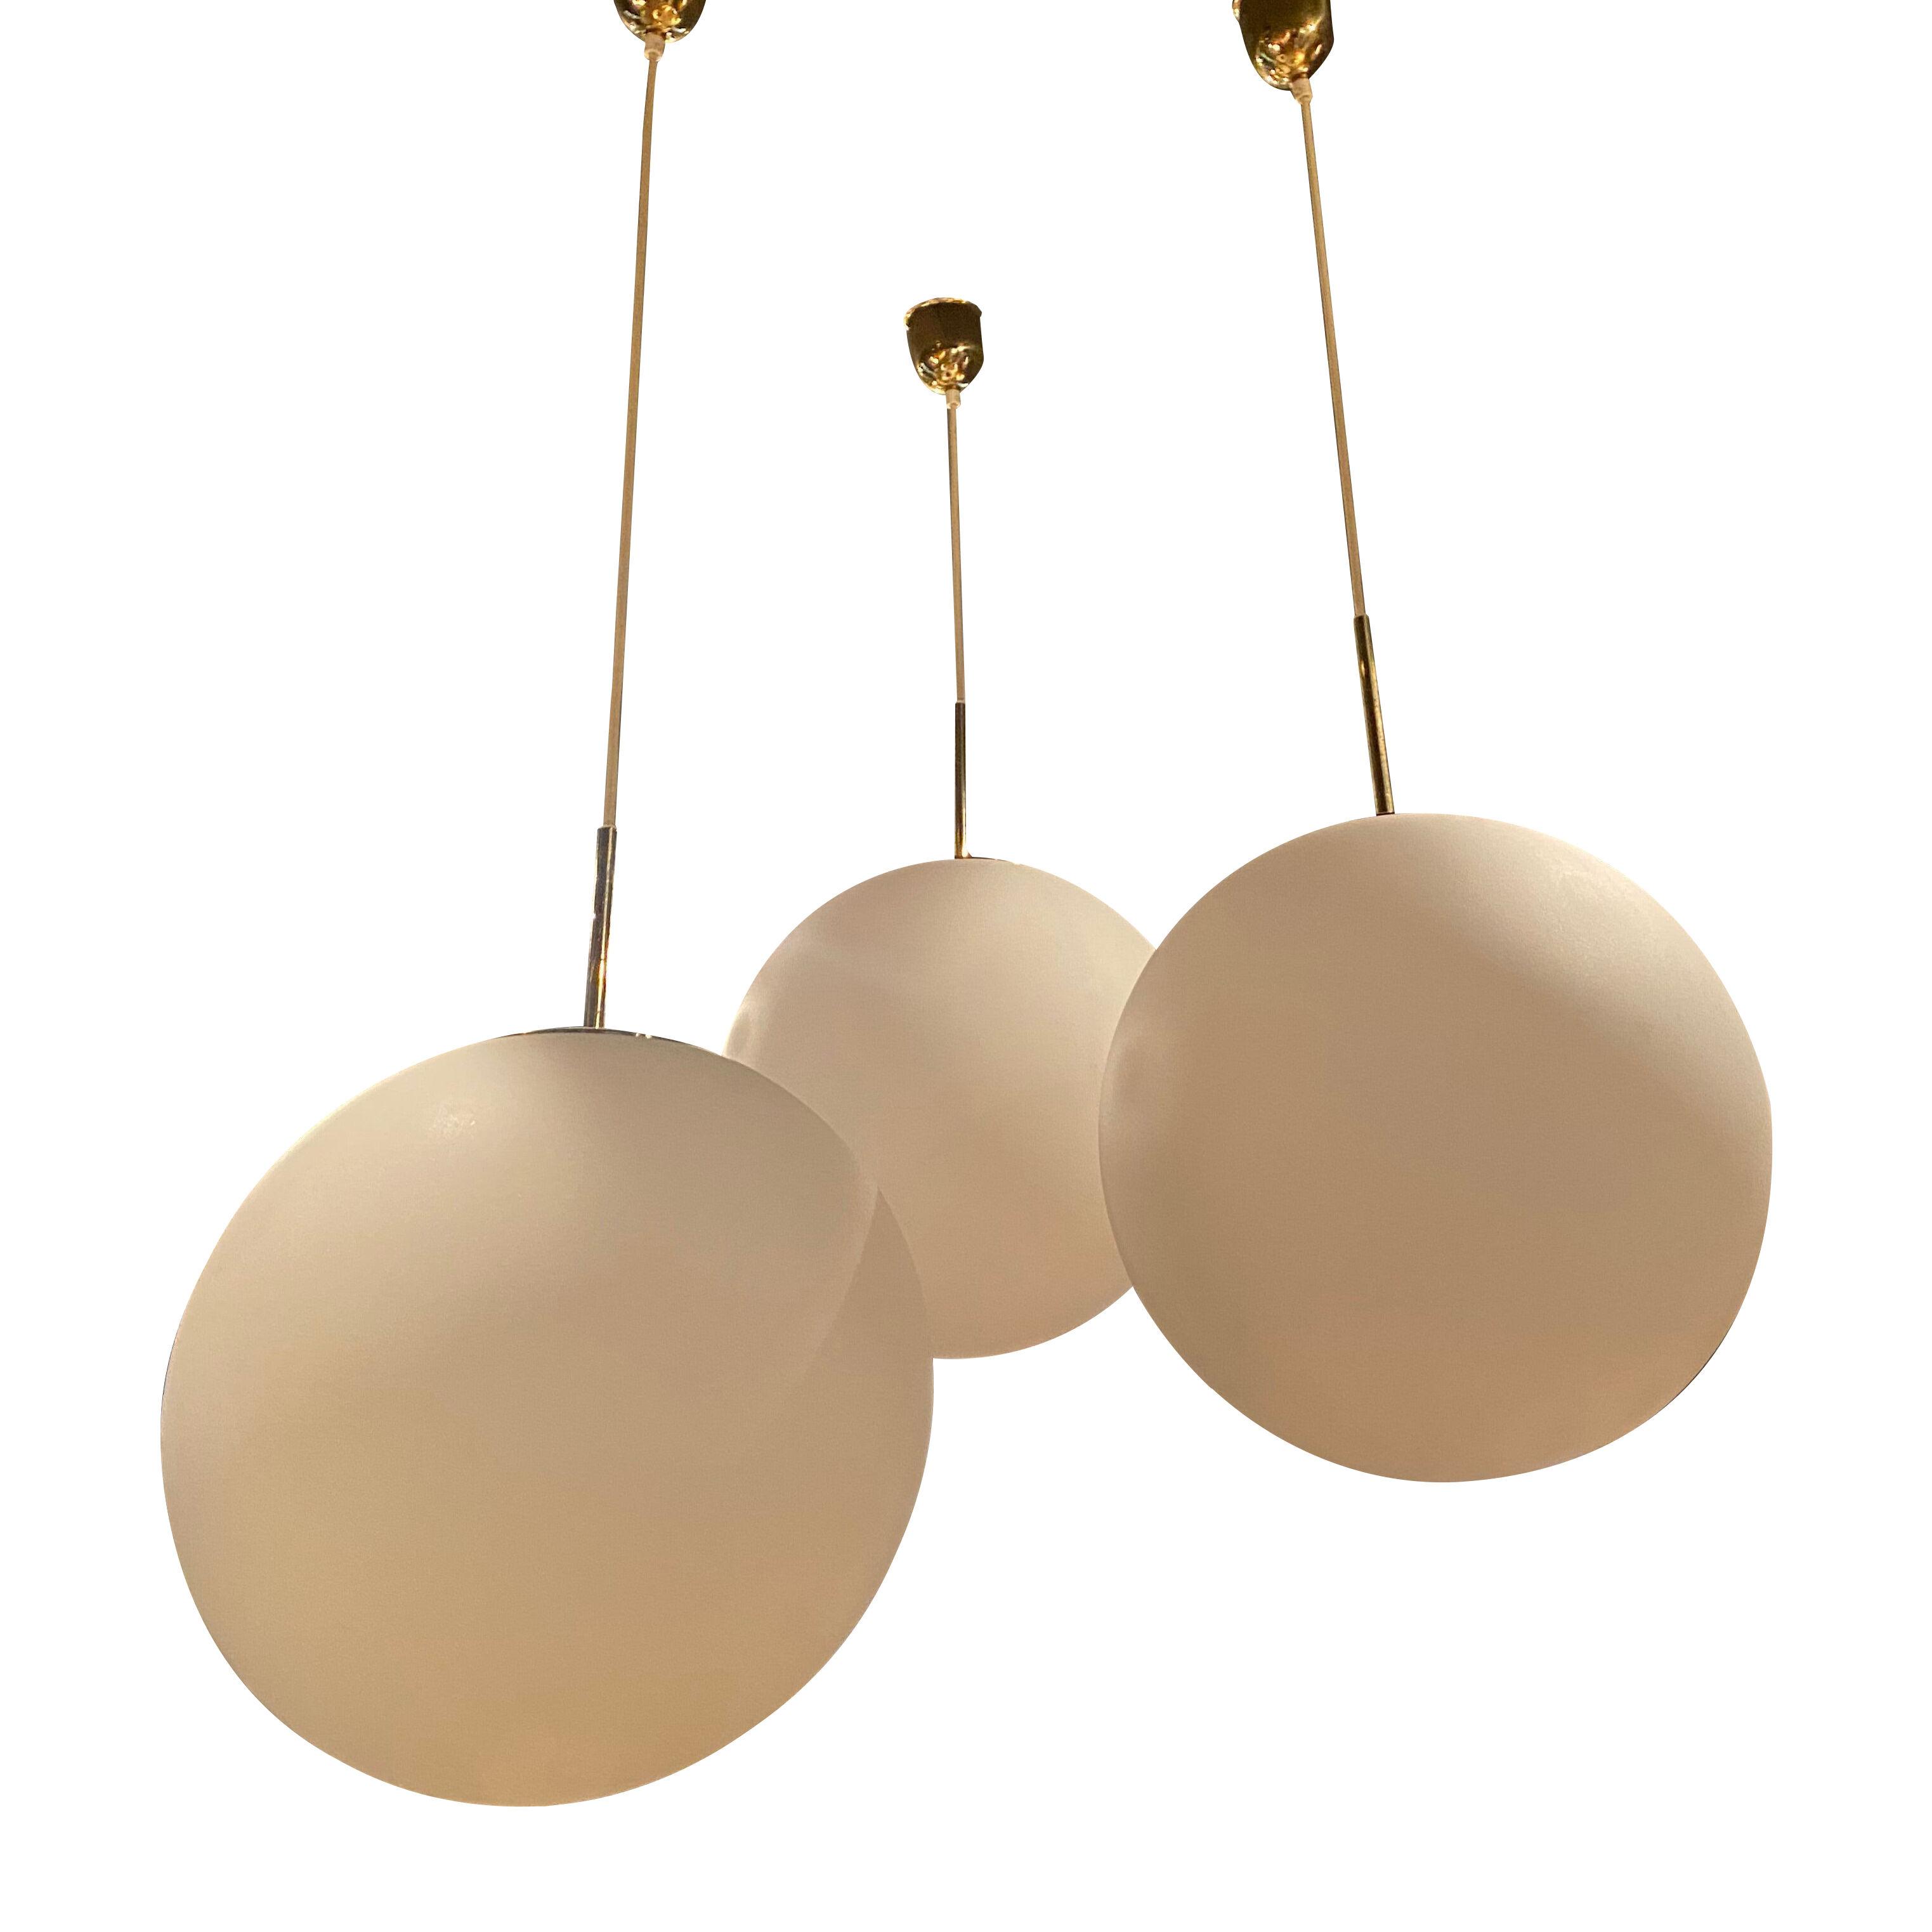 A set of 3 Glass Balls Pendant assembled as a Lighting Set